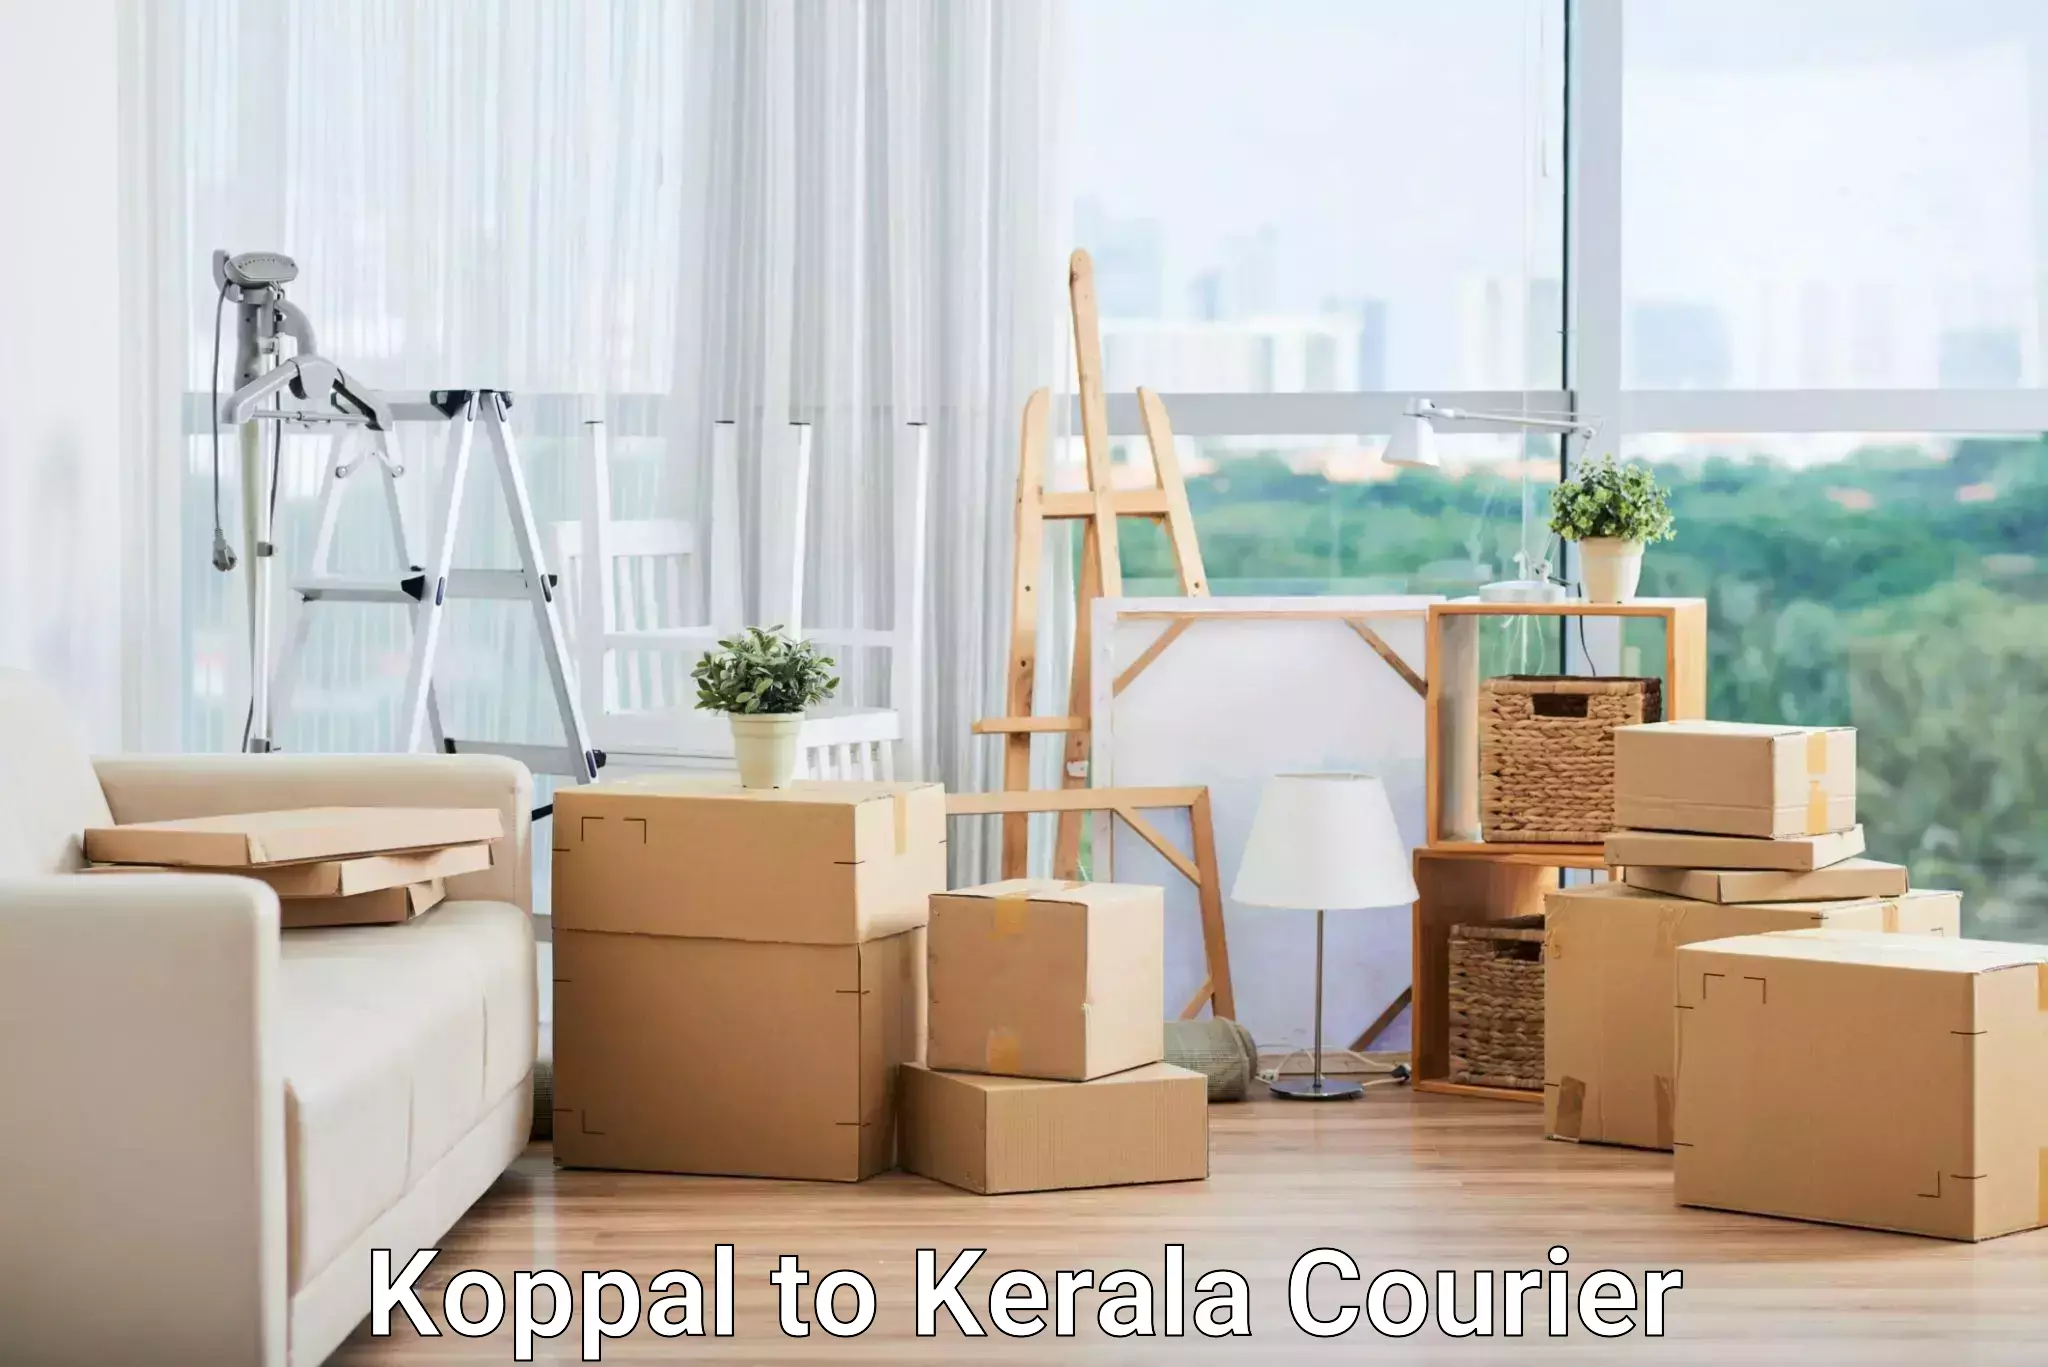 Door-to-door freight service Koppal to Calicut